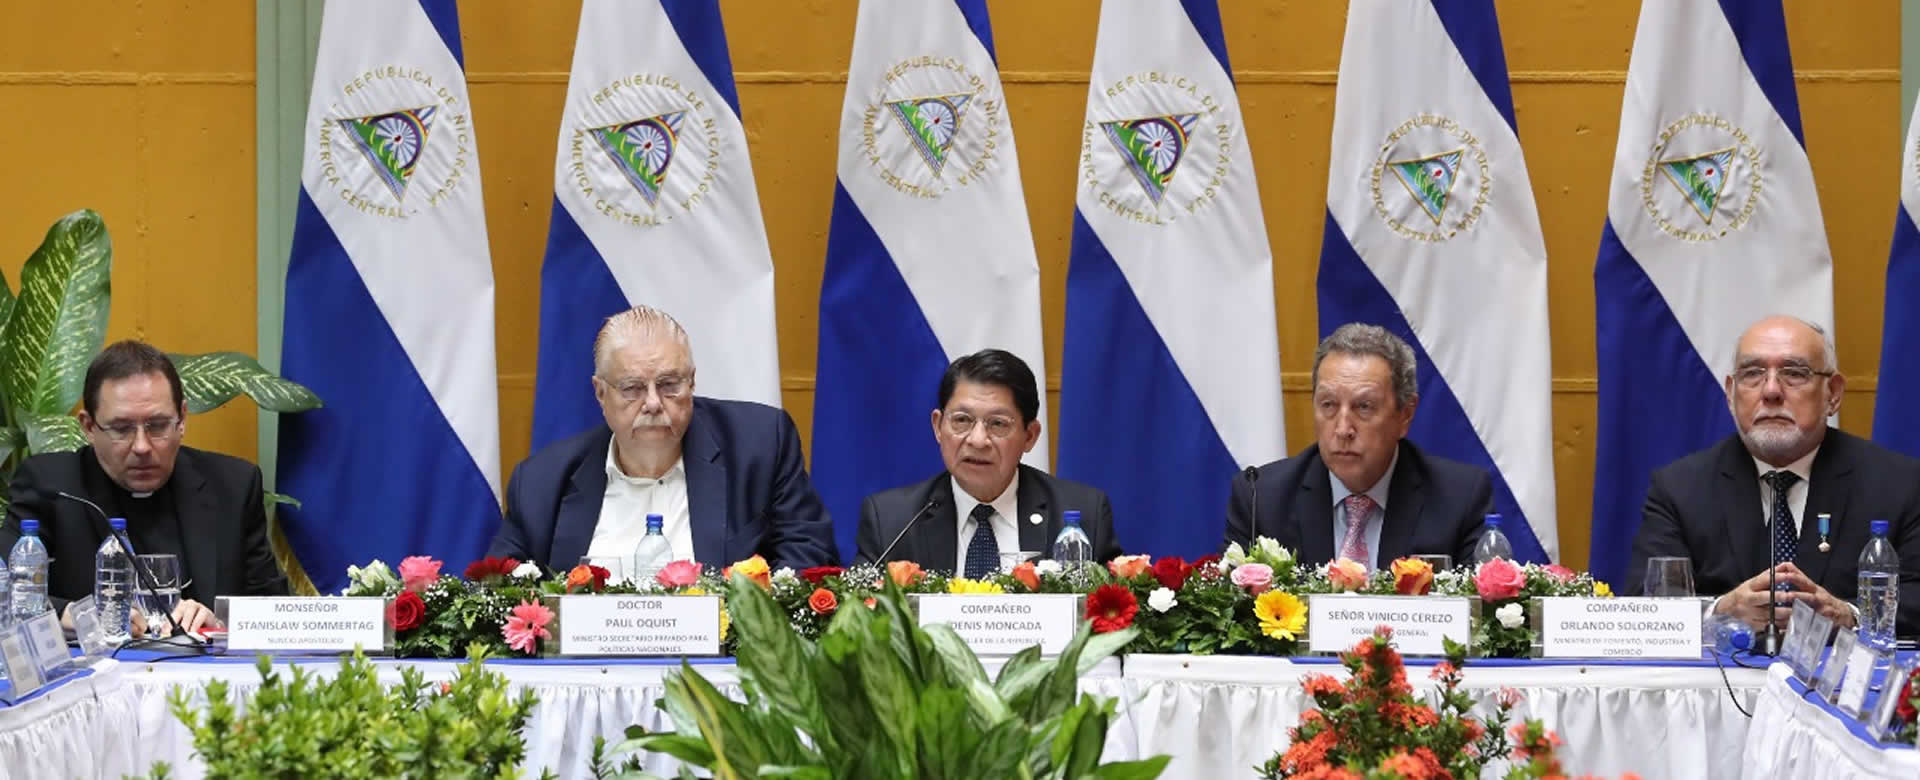 Gobierno de Nicaragua dirige saludo de año nuevo al cuerpo diplomático